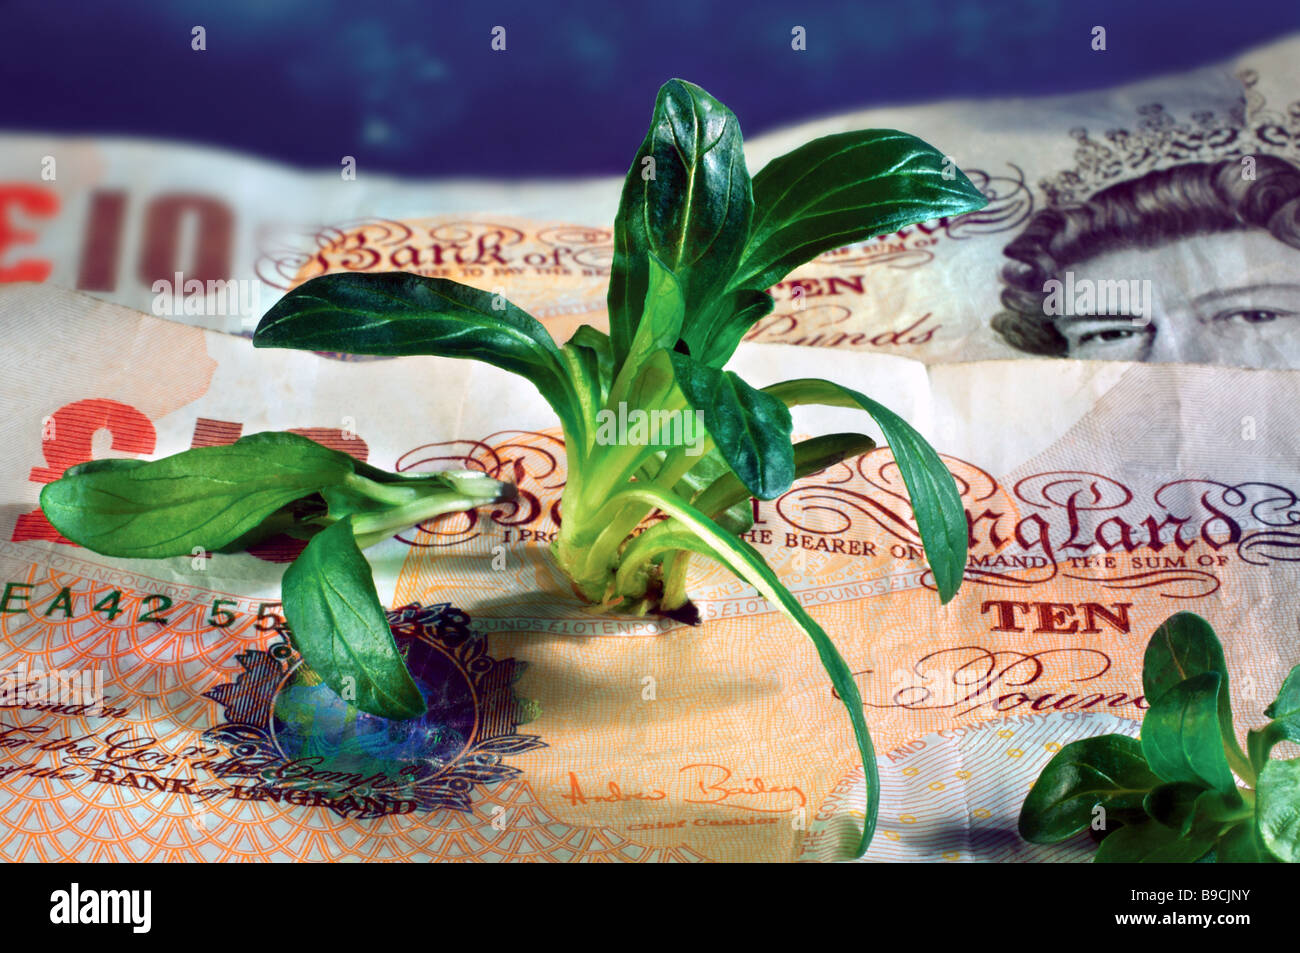 Les pousses vertes de la croissance économique de l'économie britannique de récupération Banque D'Images